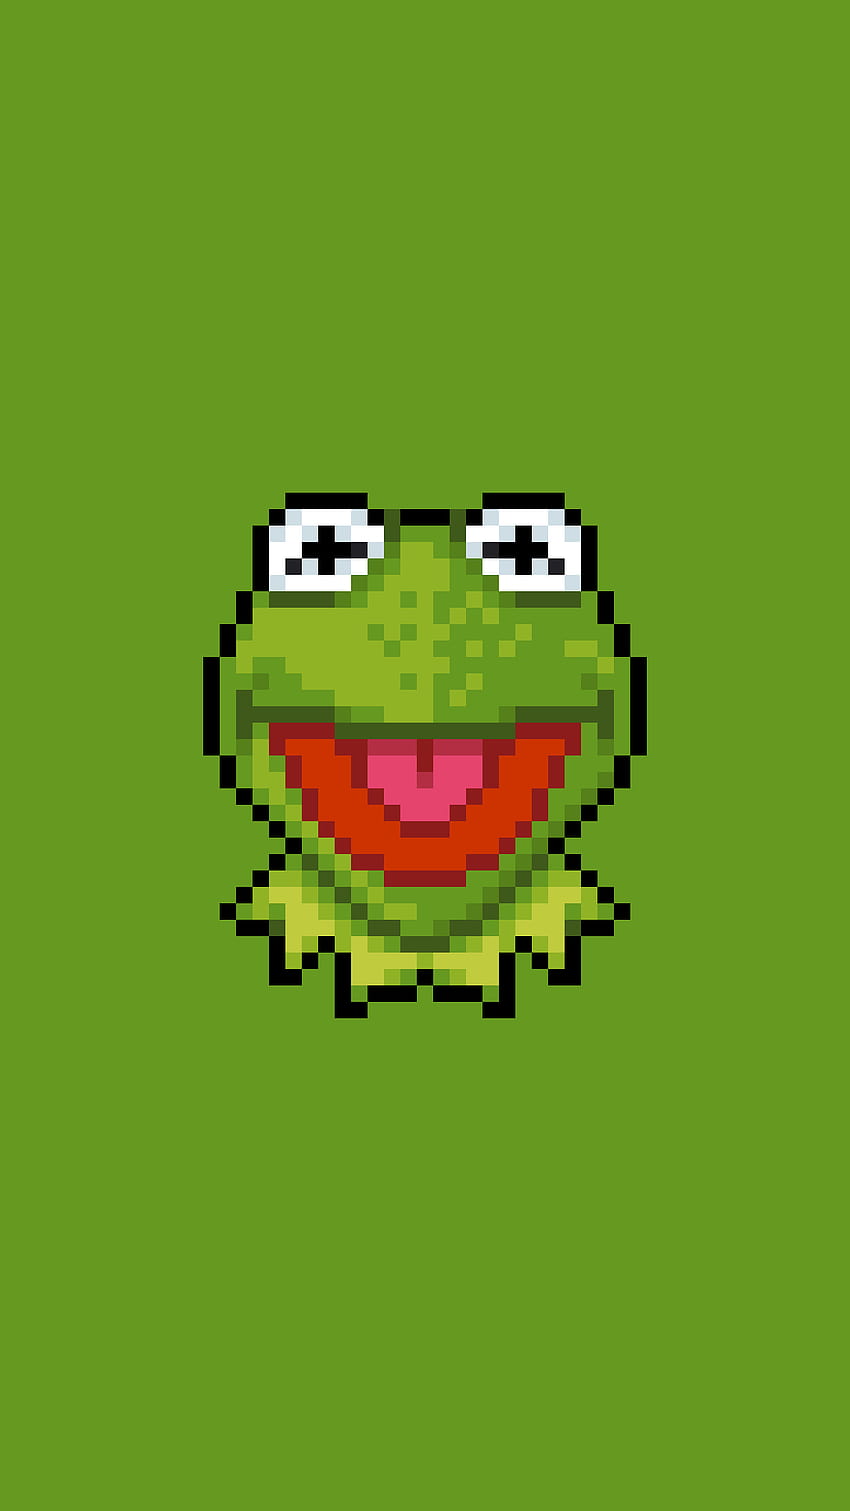 Những tấm ảnh meme về con ếch này sẽ khiến bạn mỉm cười suốt cả ngày. Hãy nhấp vào và tham quan các tấm ảnh này để có một ngày tốt đẹp hơn.